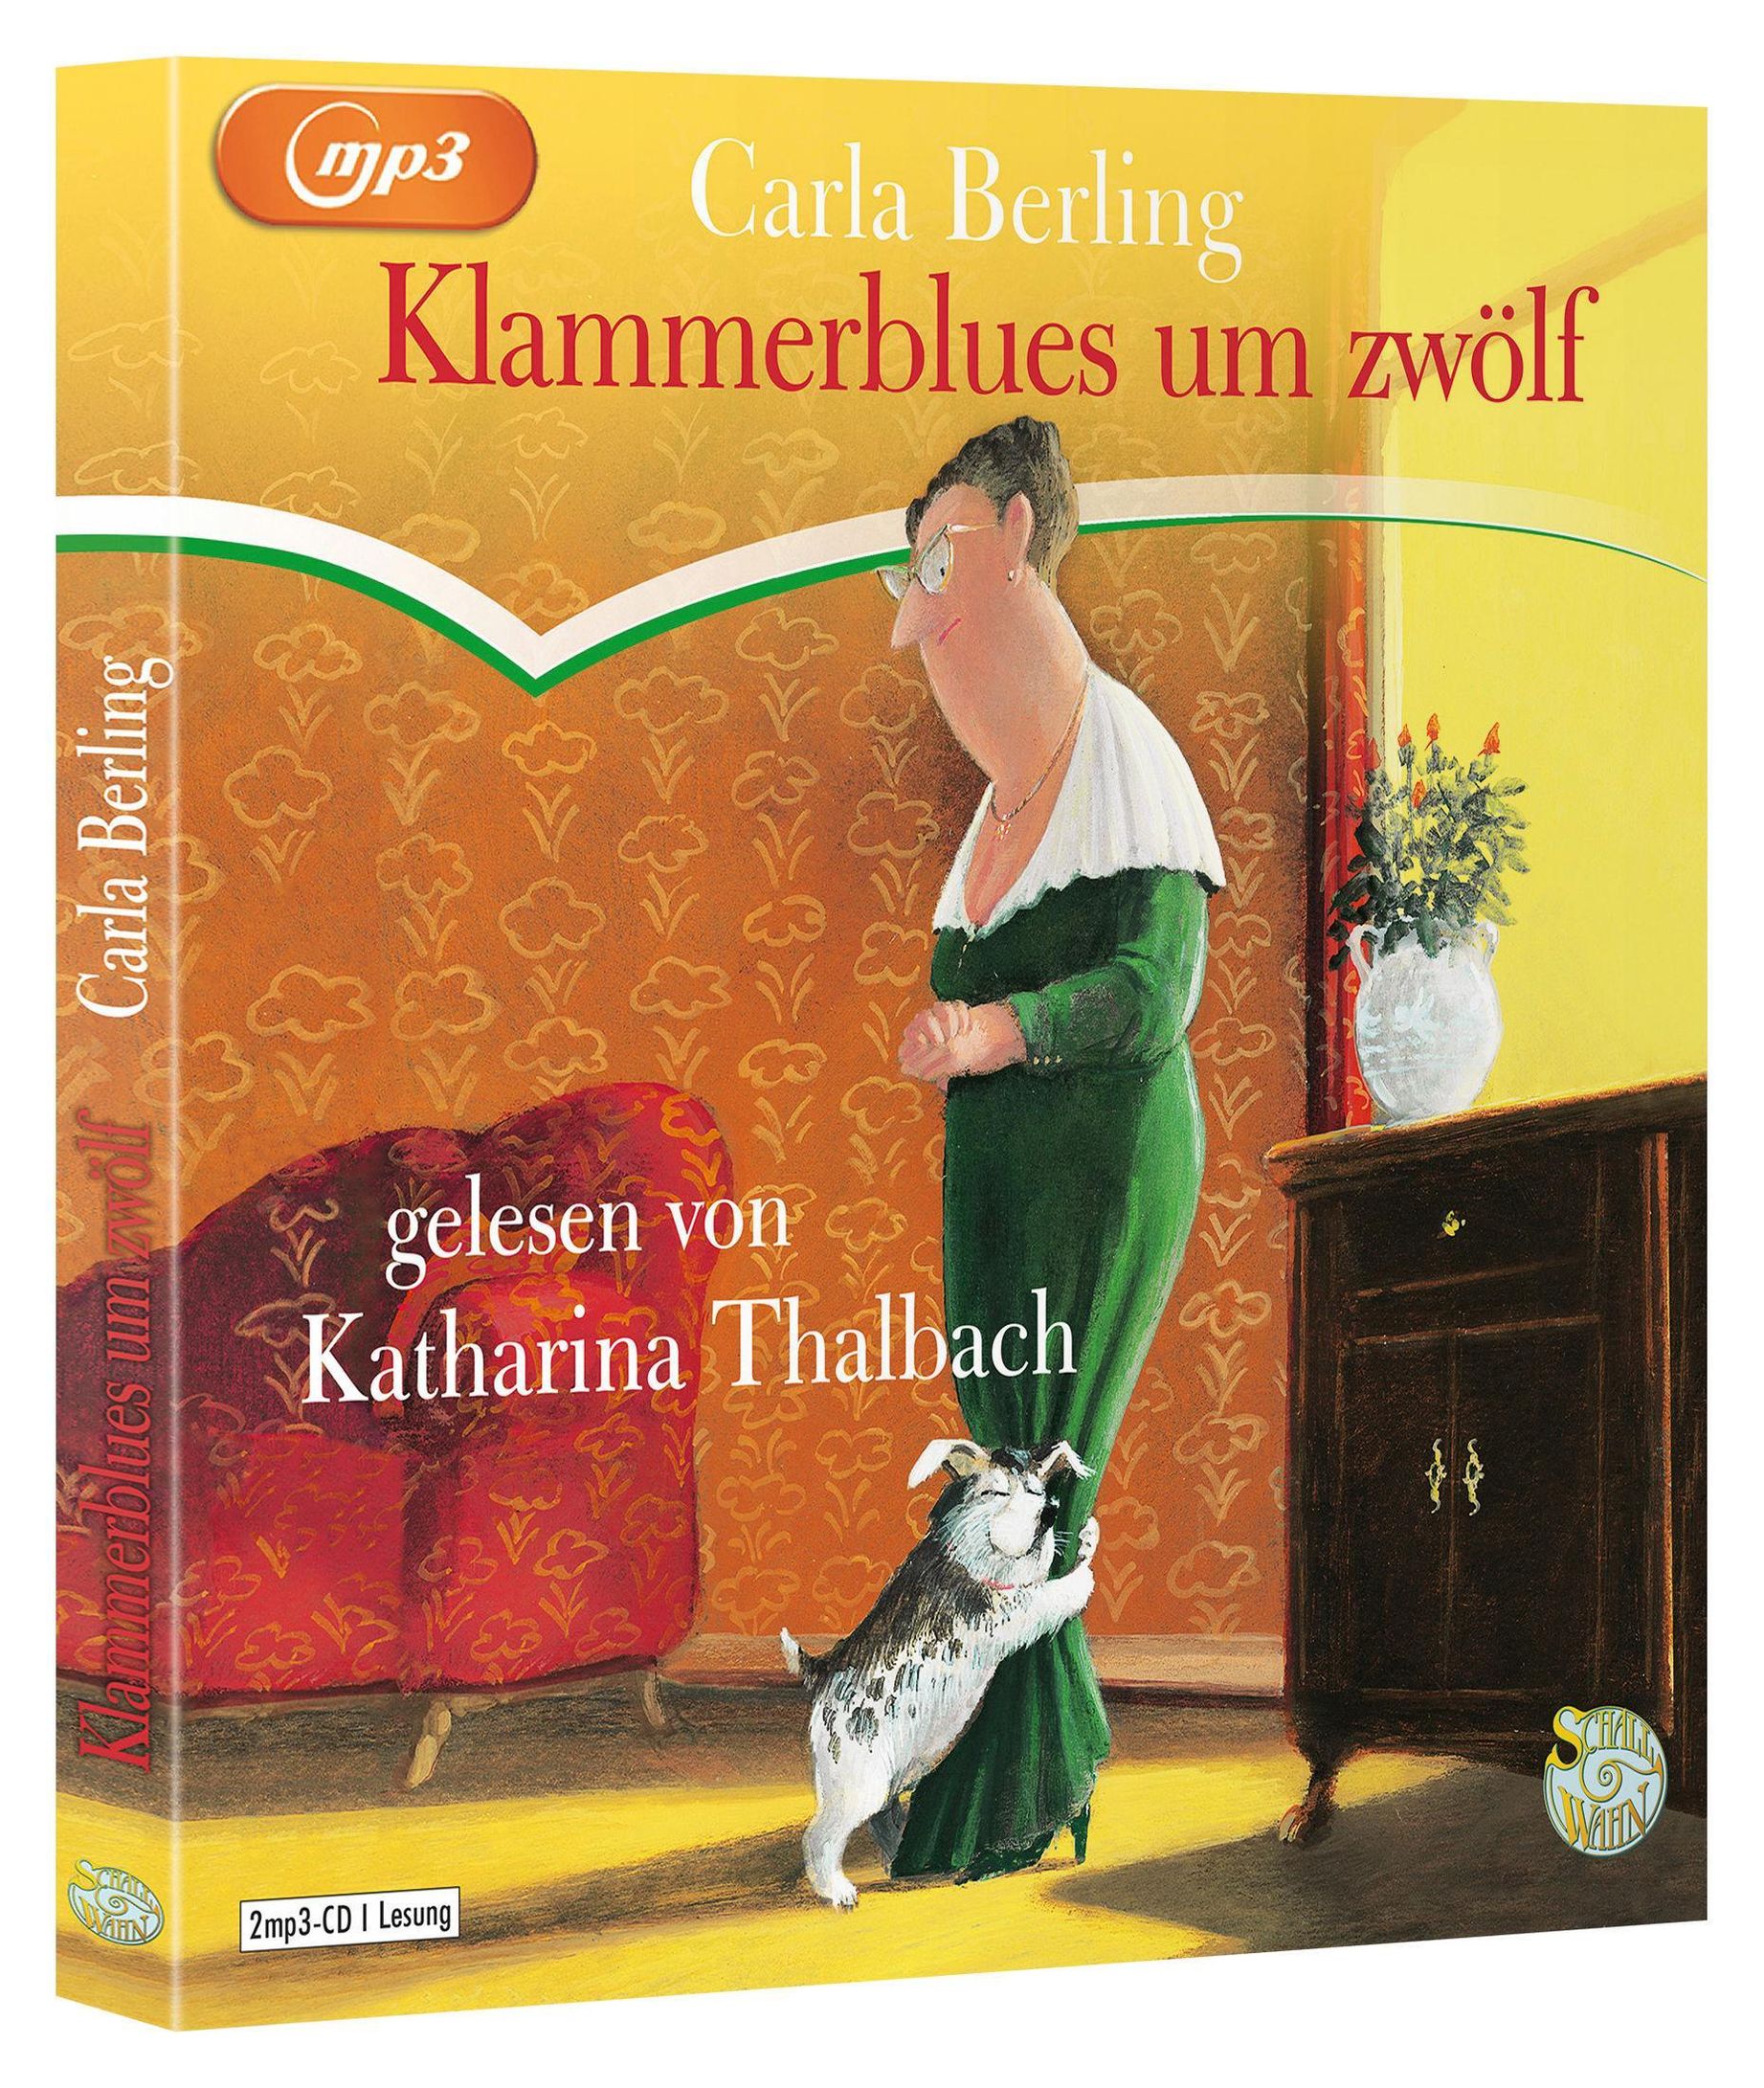 Klammerblues um zwölf, 2 Audio-CD, 2 MP3 Hörbuch - Weltbild.de